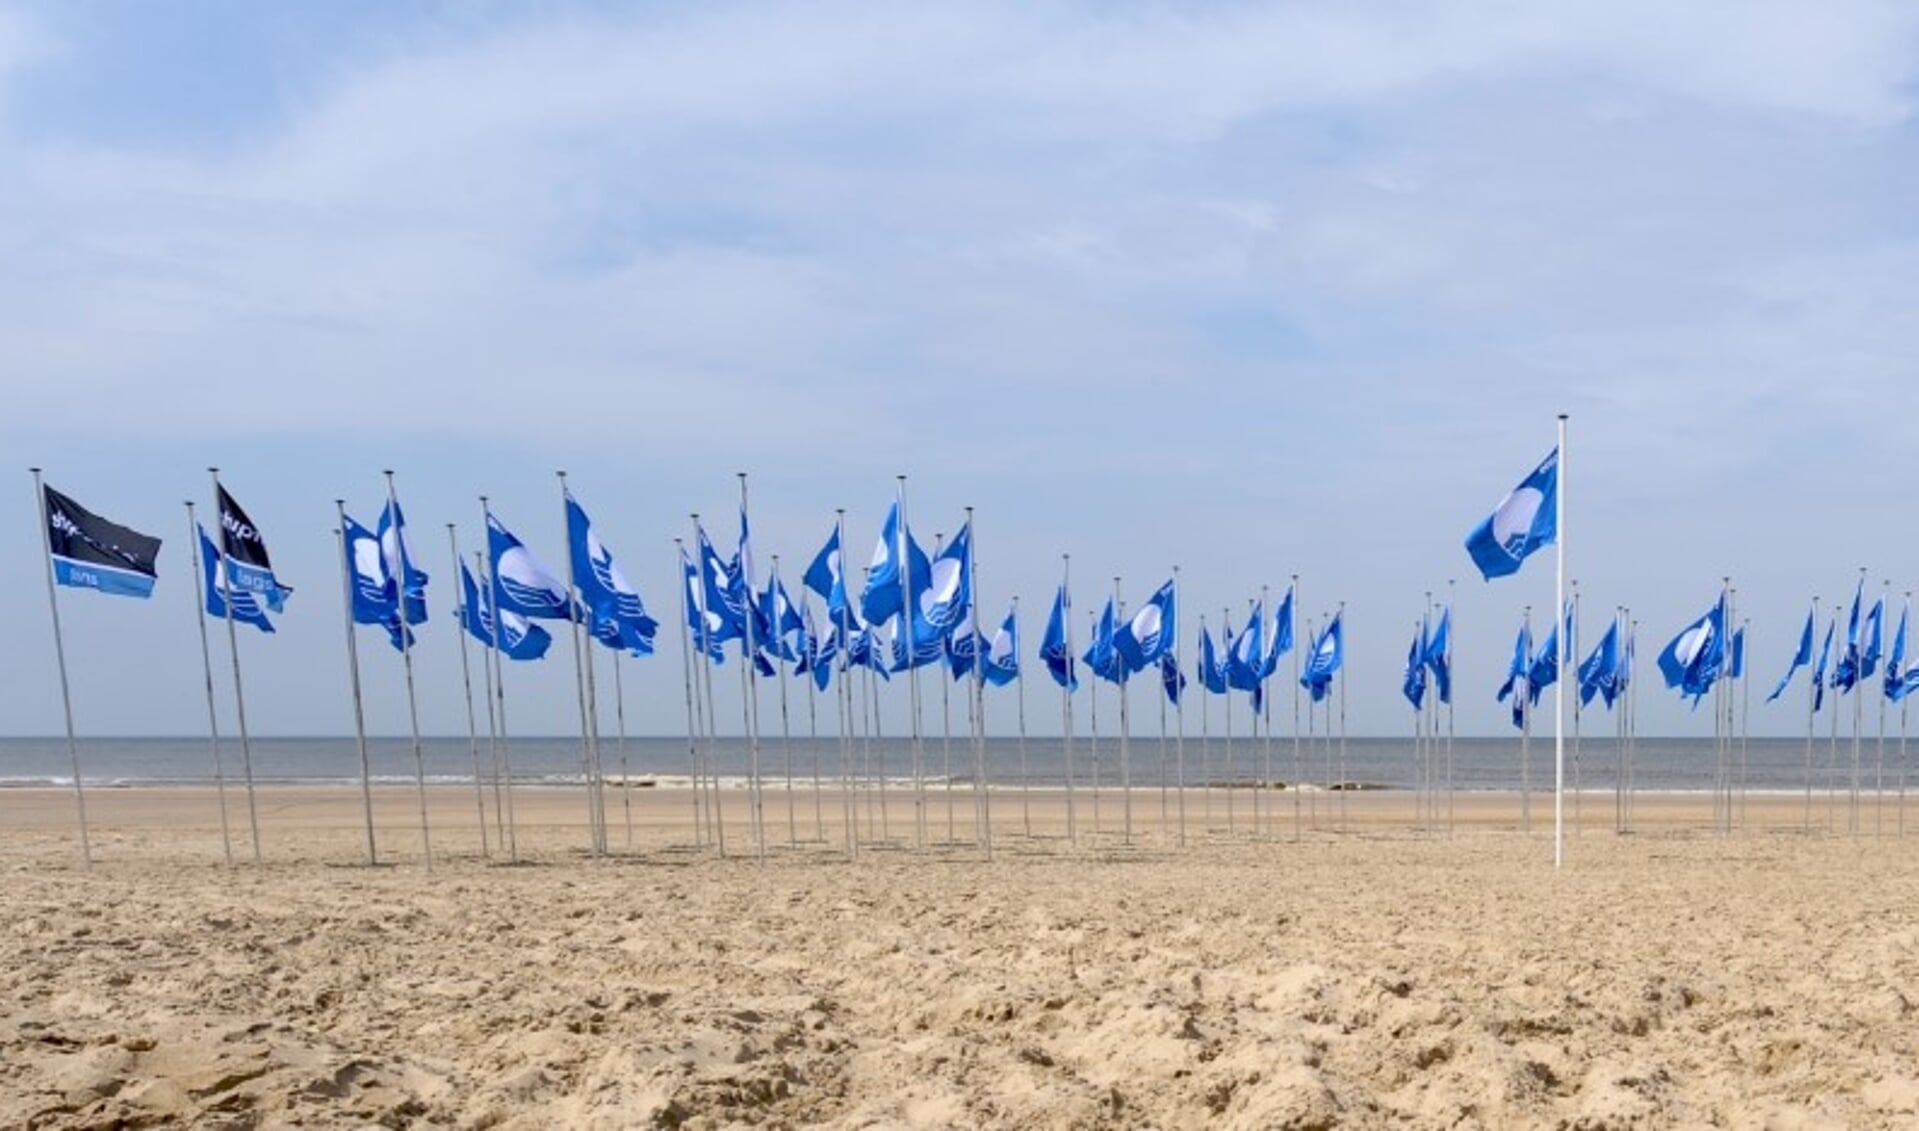 Castricum was eerder host van de landelijke uitreiking: van alle Blauwe Vlag-gemeenten wapperden er toen vlaggen aan het Castricumse strand.